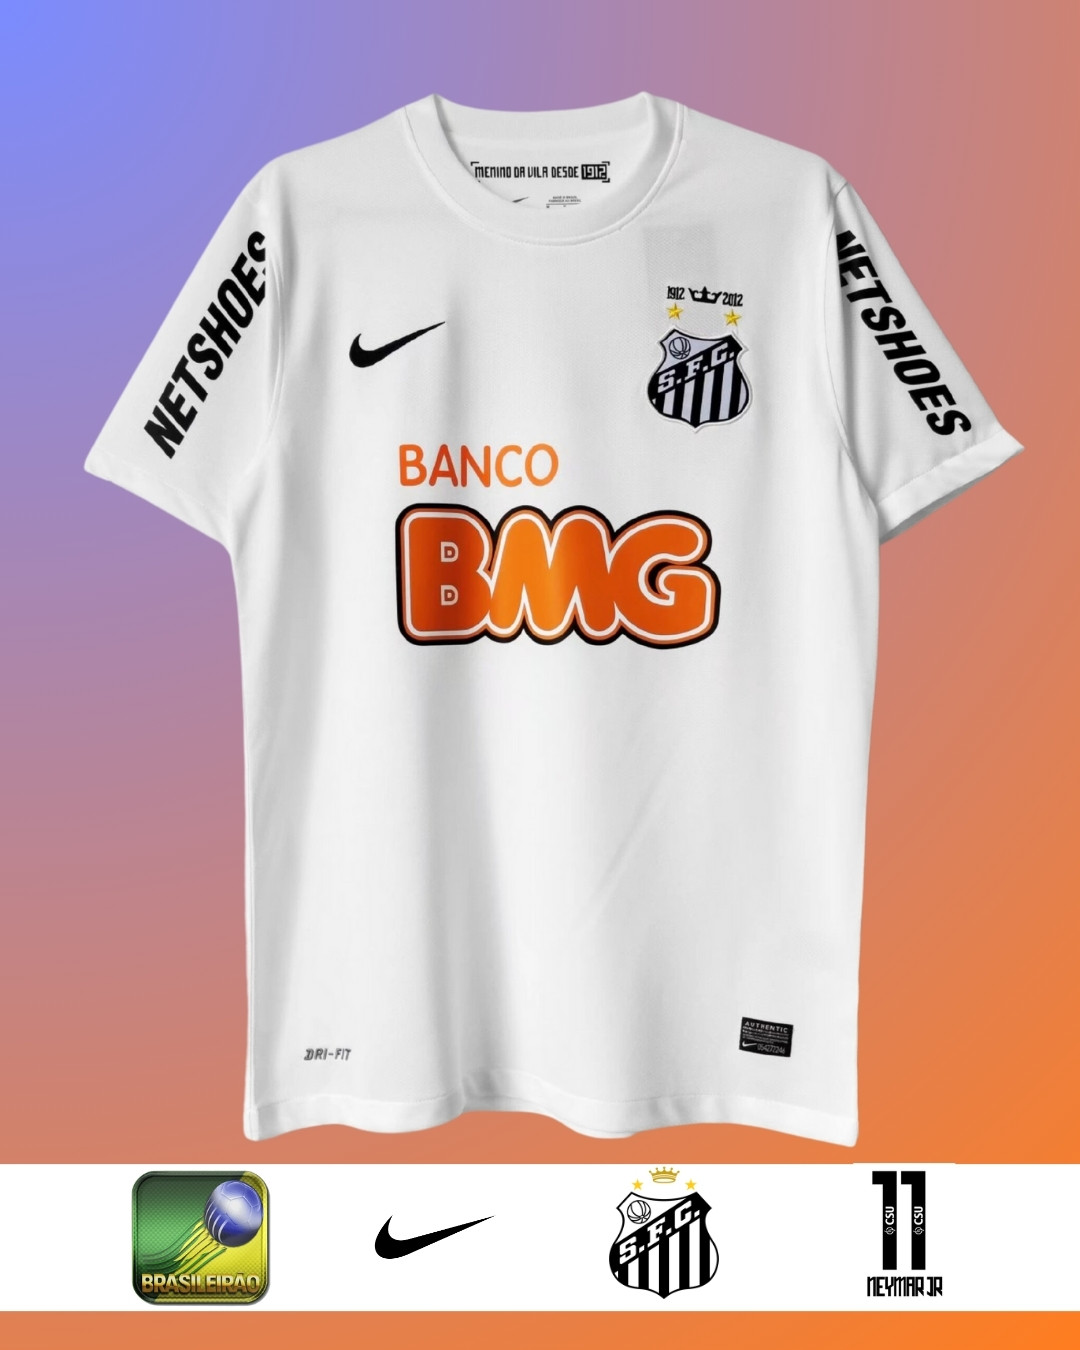 Camiseta Neymar JR, Santos 2011-2013. Más información en nuestro insta